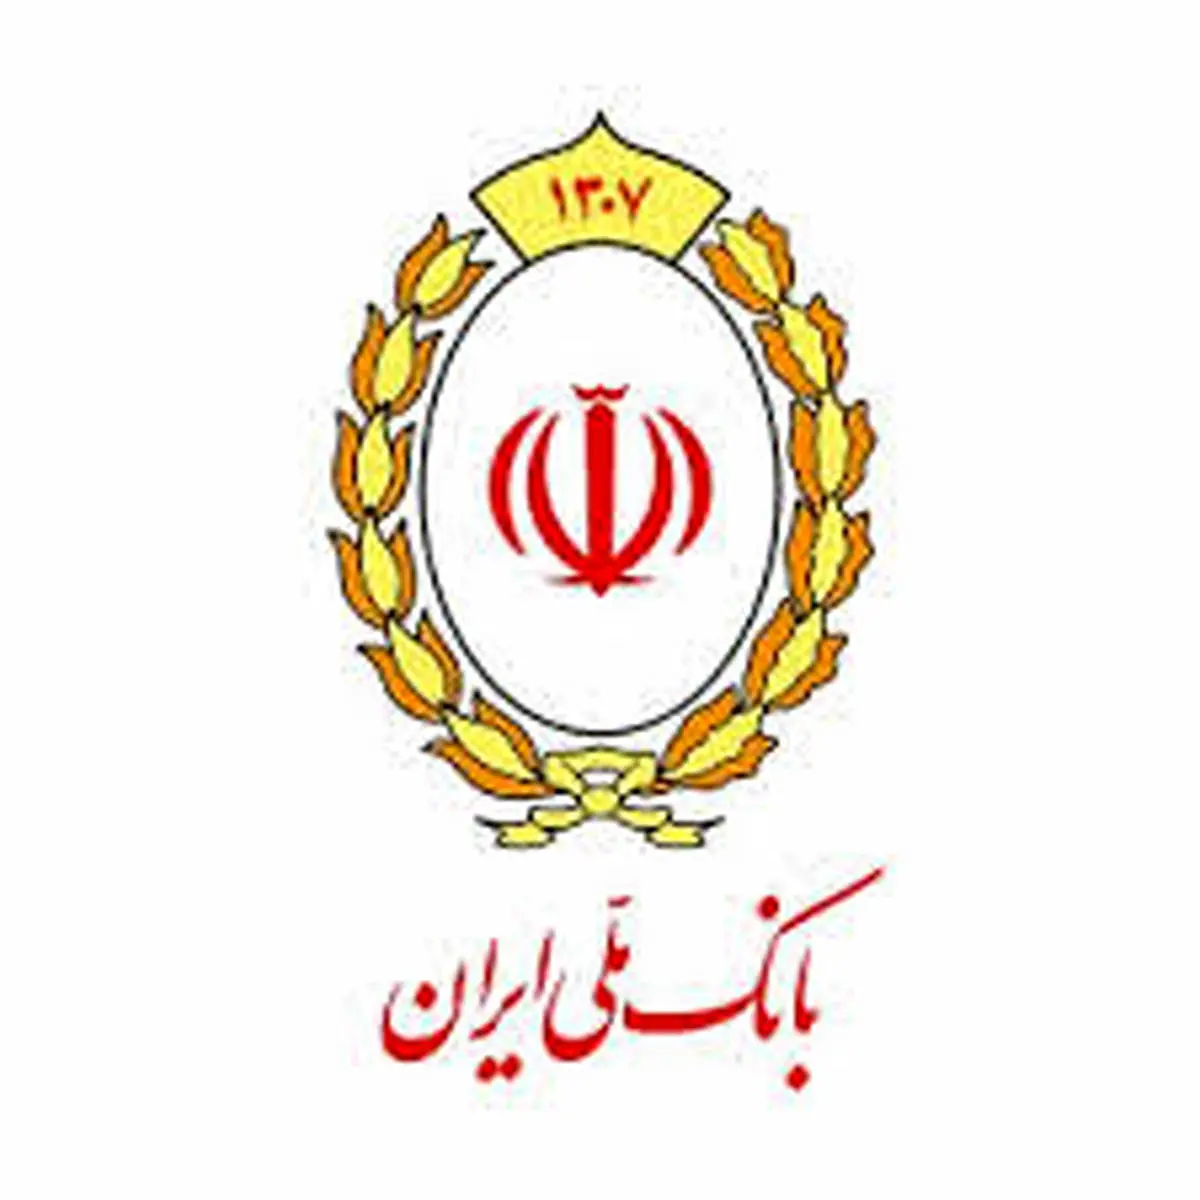  بانک ملی ایران درسال گذشته156 هزار میلیارد ریال تسهیلات قرض الحسنه پرداخت کرد